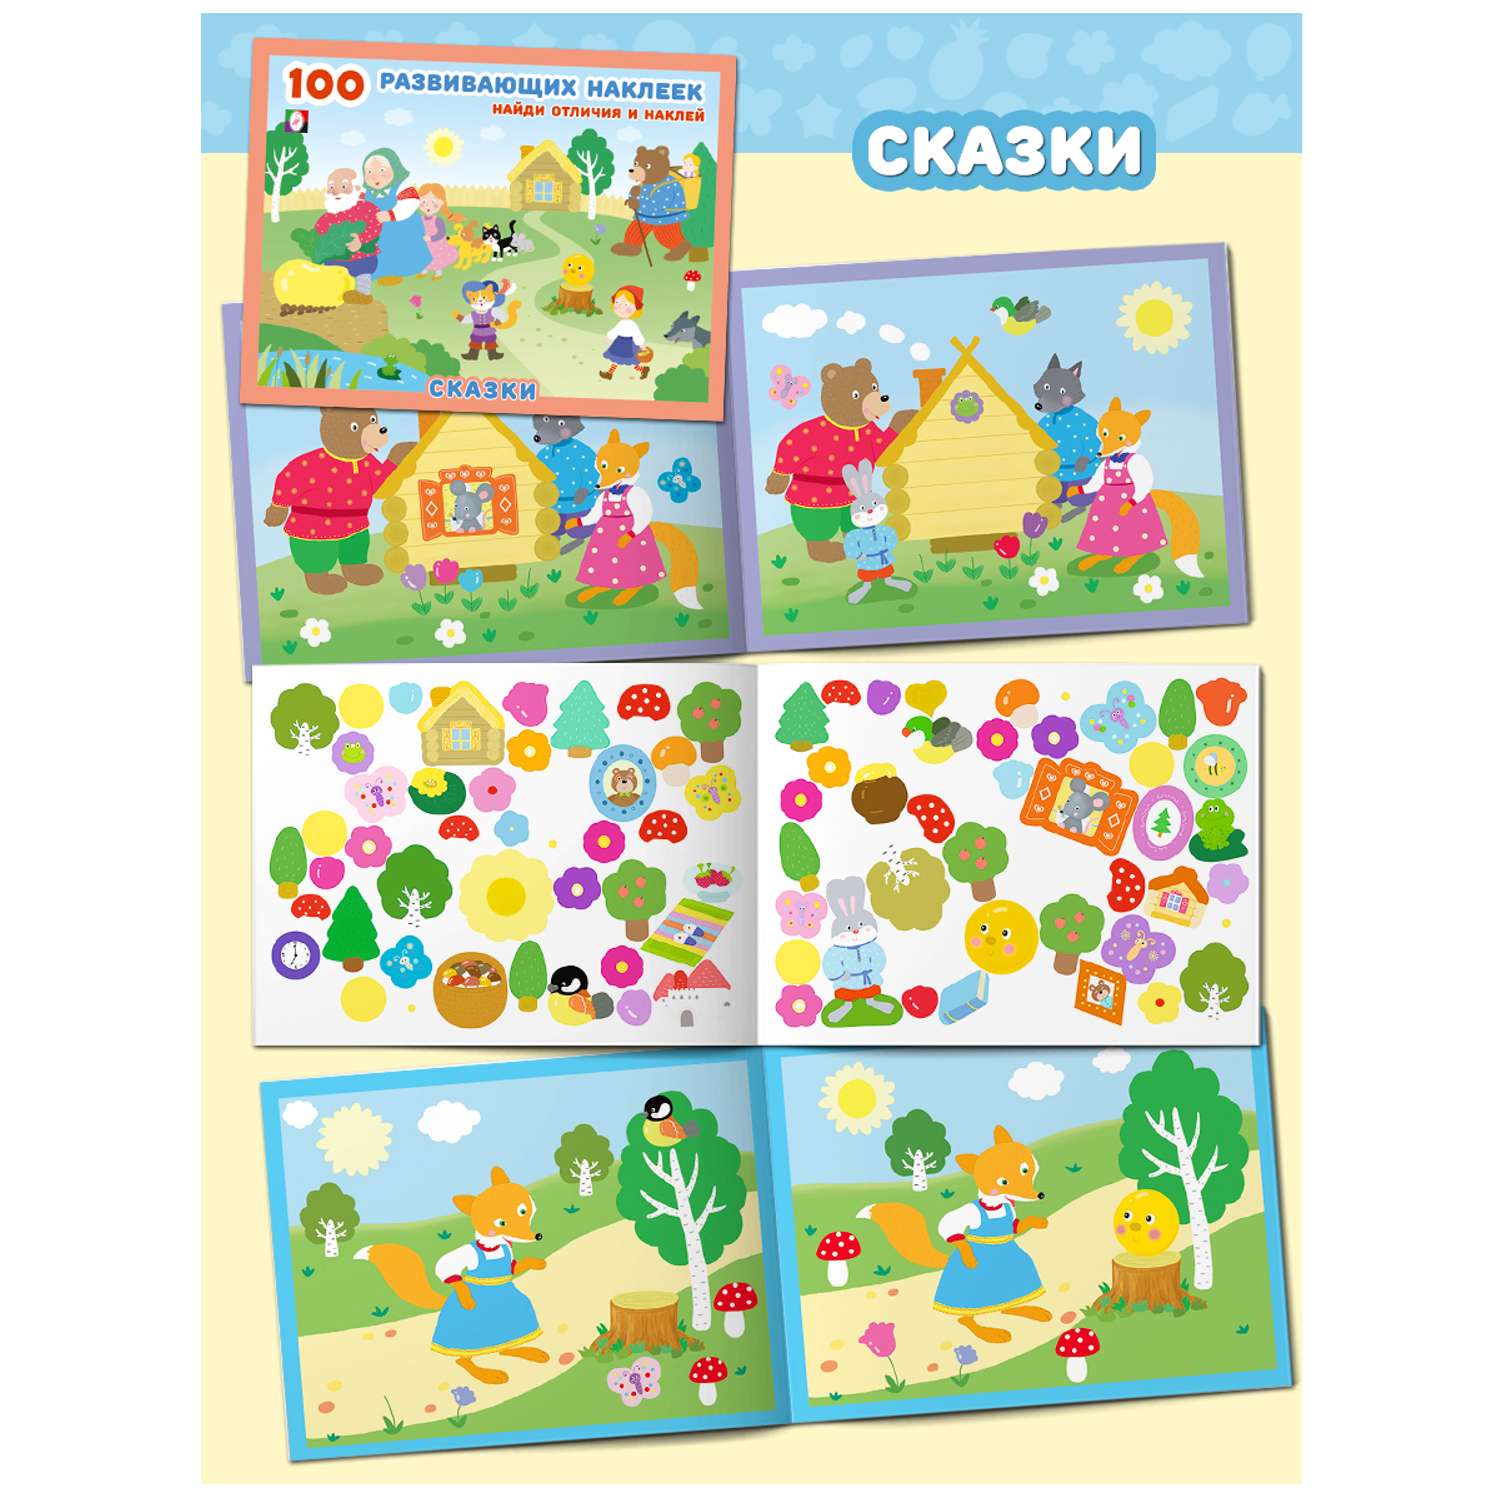 Набор из 2-х книг Фламинго 100 развивающих наклеек для малышей Найди отличия и наклей для детей Развитие ребенка - фото 4